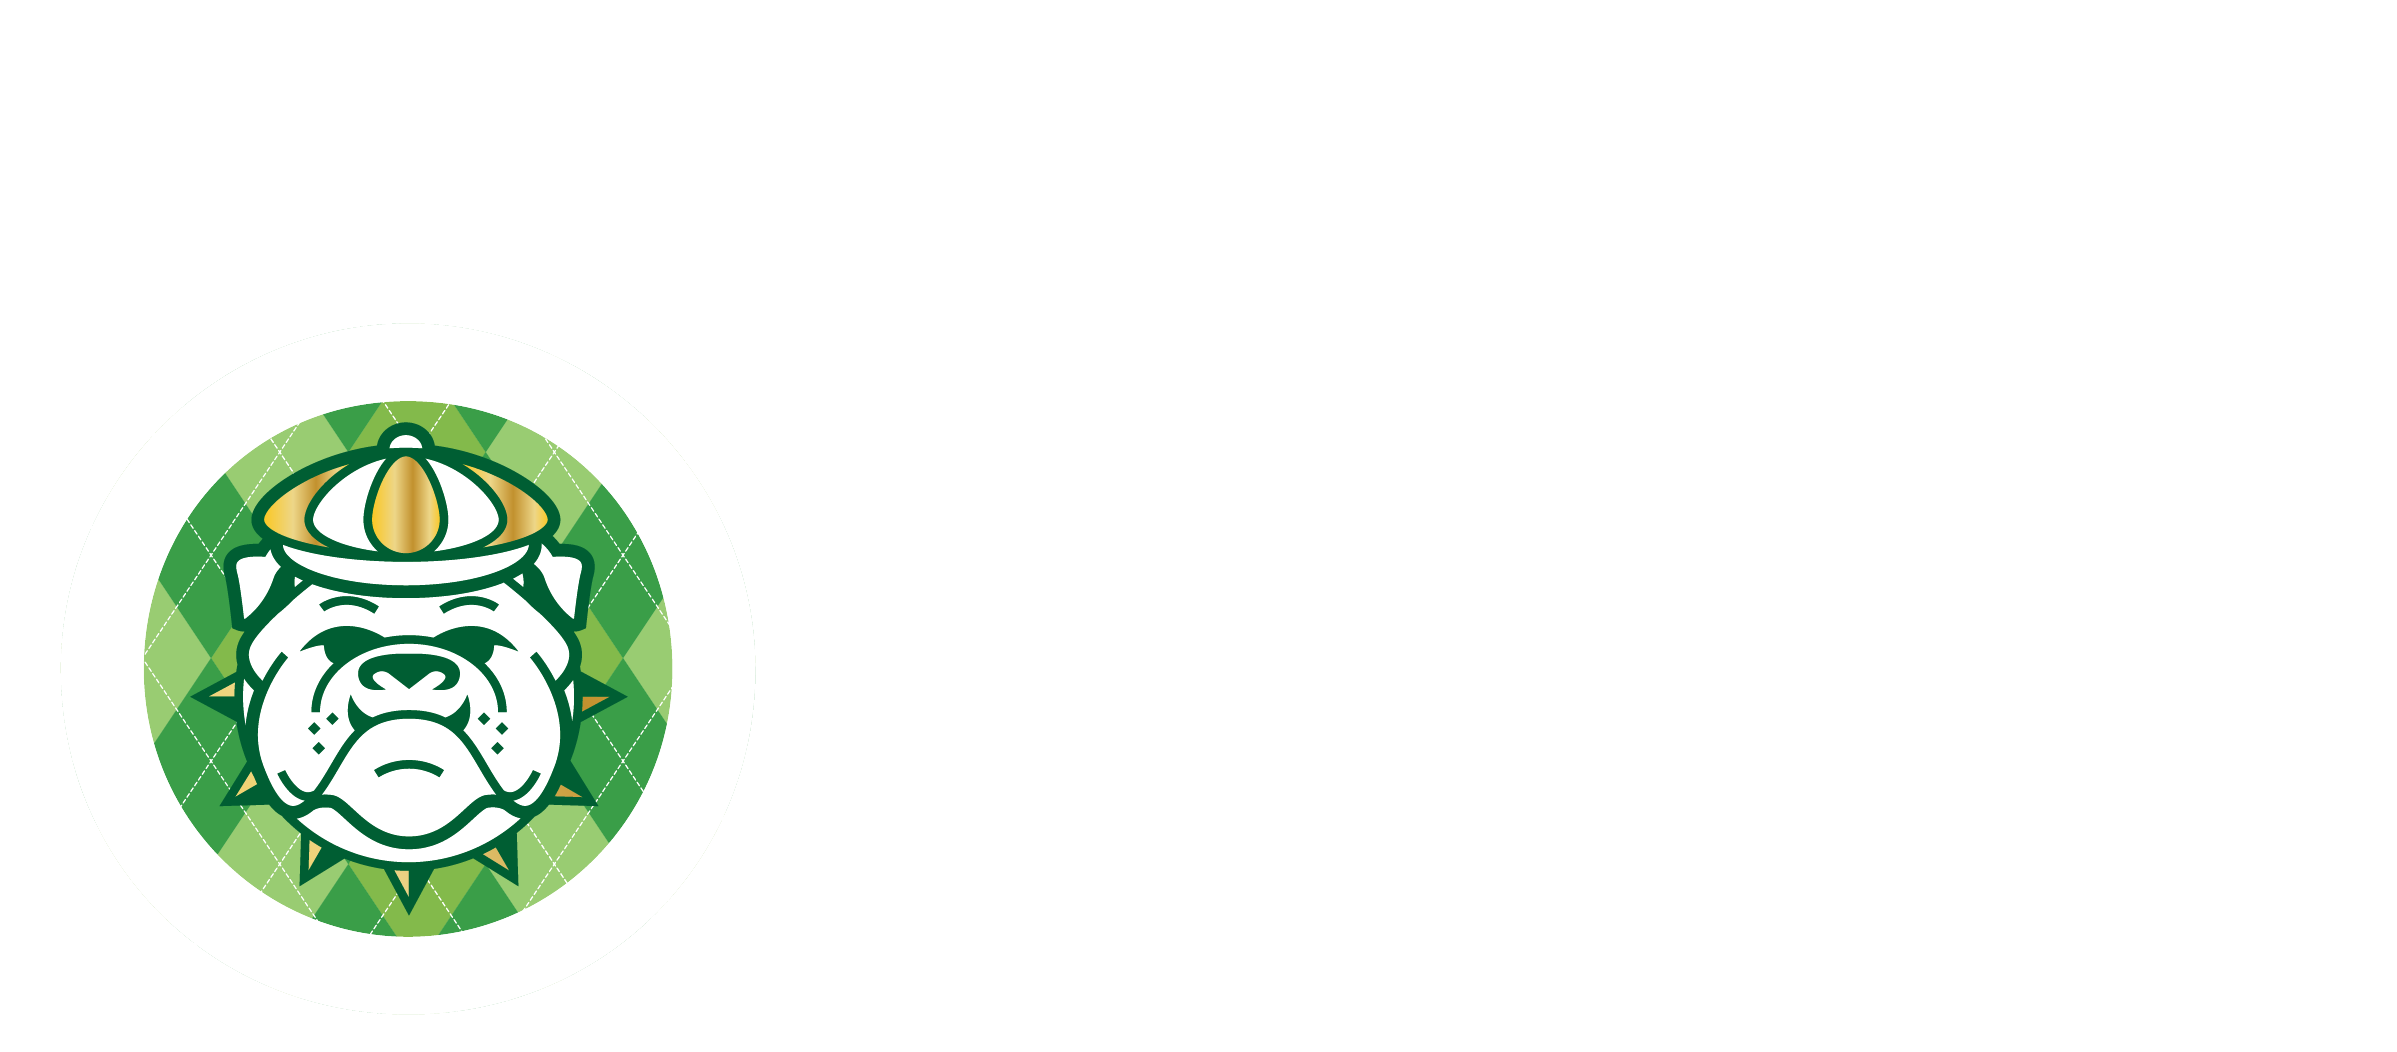 Green & White Open Tournament Registration